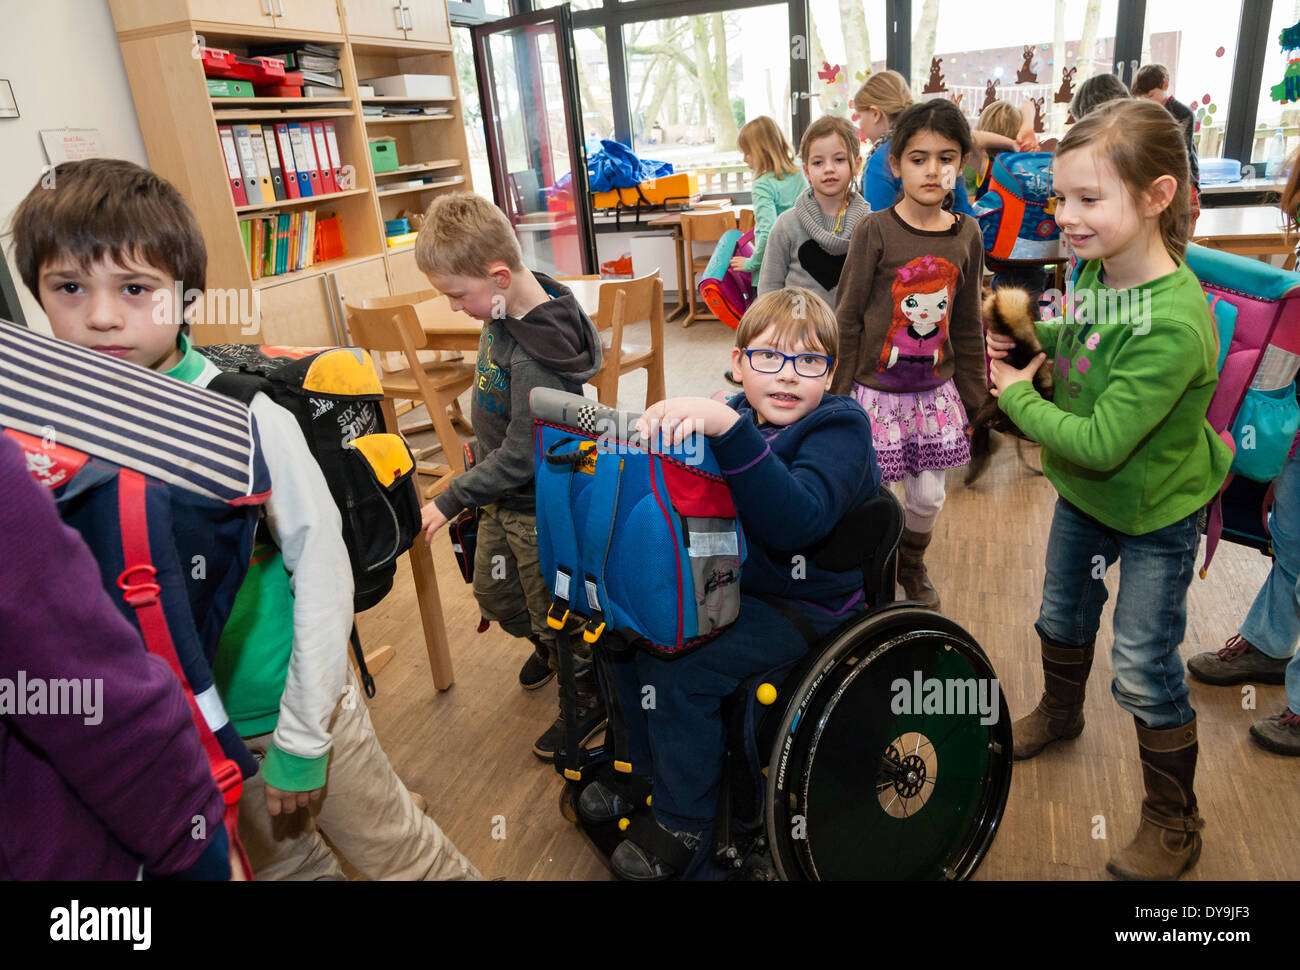 Non-disabili e gli studenti disabili (in questo caso un ragazzo su una sedia a rotelle) imparare insieme nella stessa classe in una scuola primaria. Foto Stock